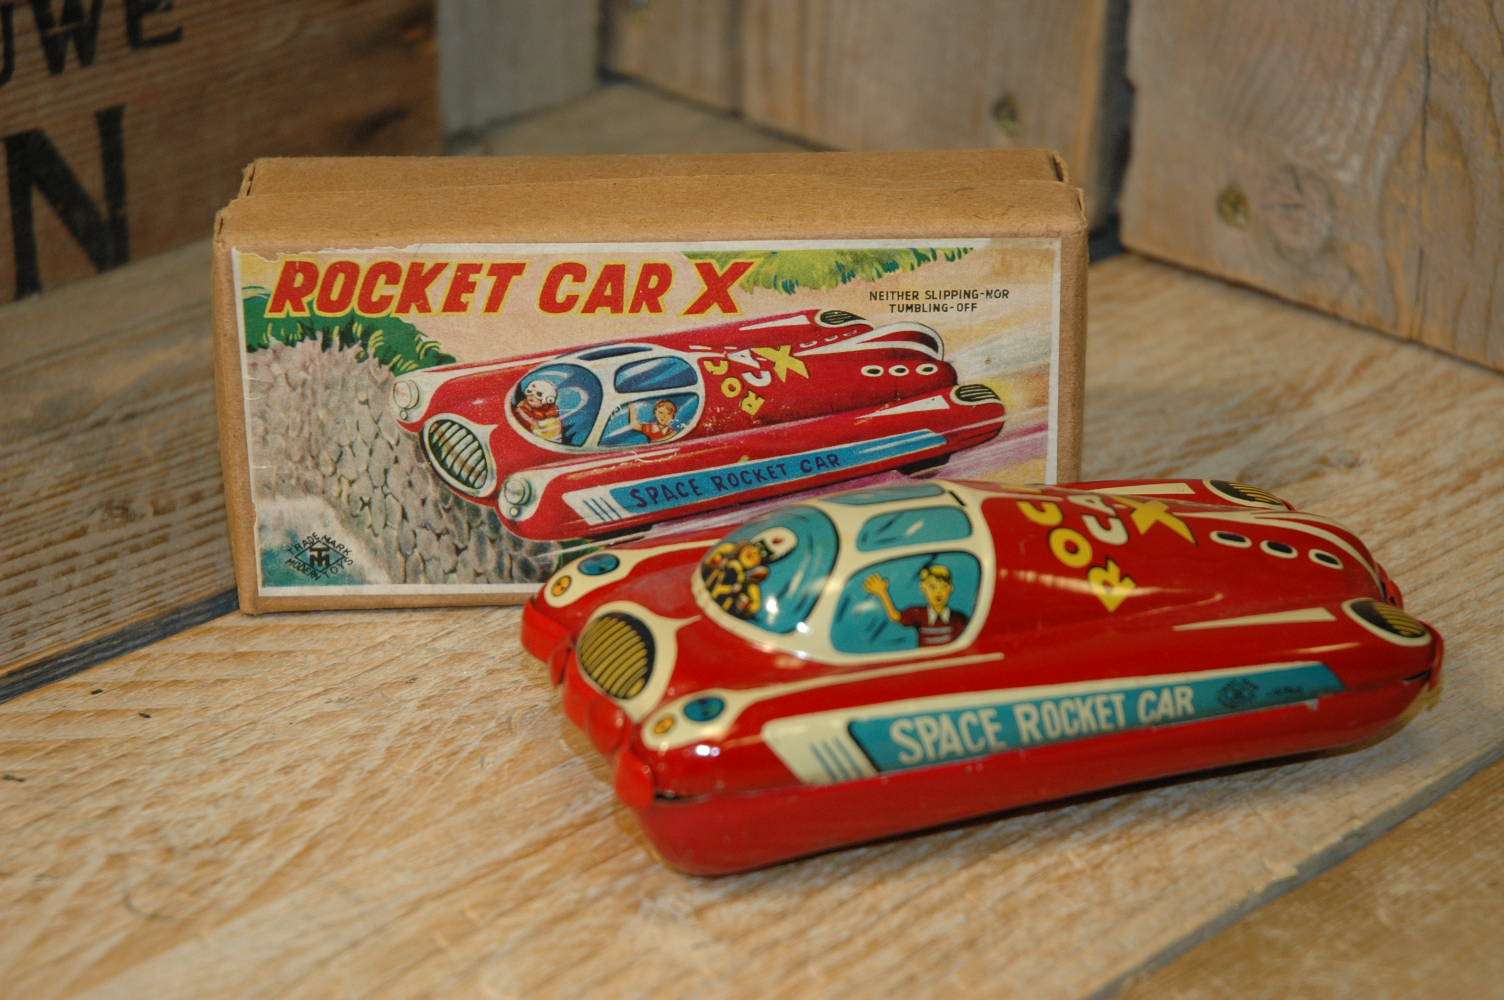 Modern Toys - Rocket Car X